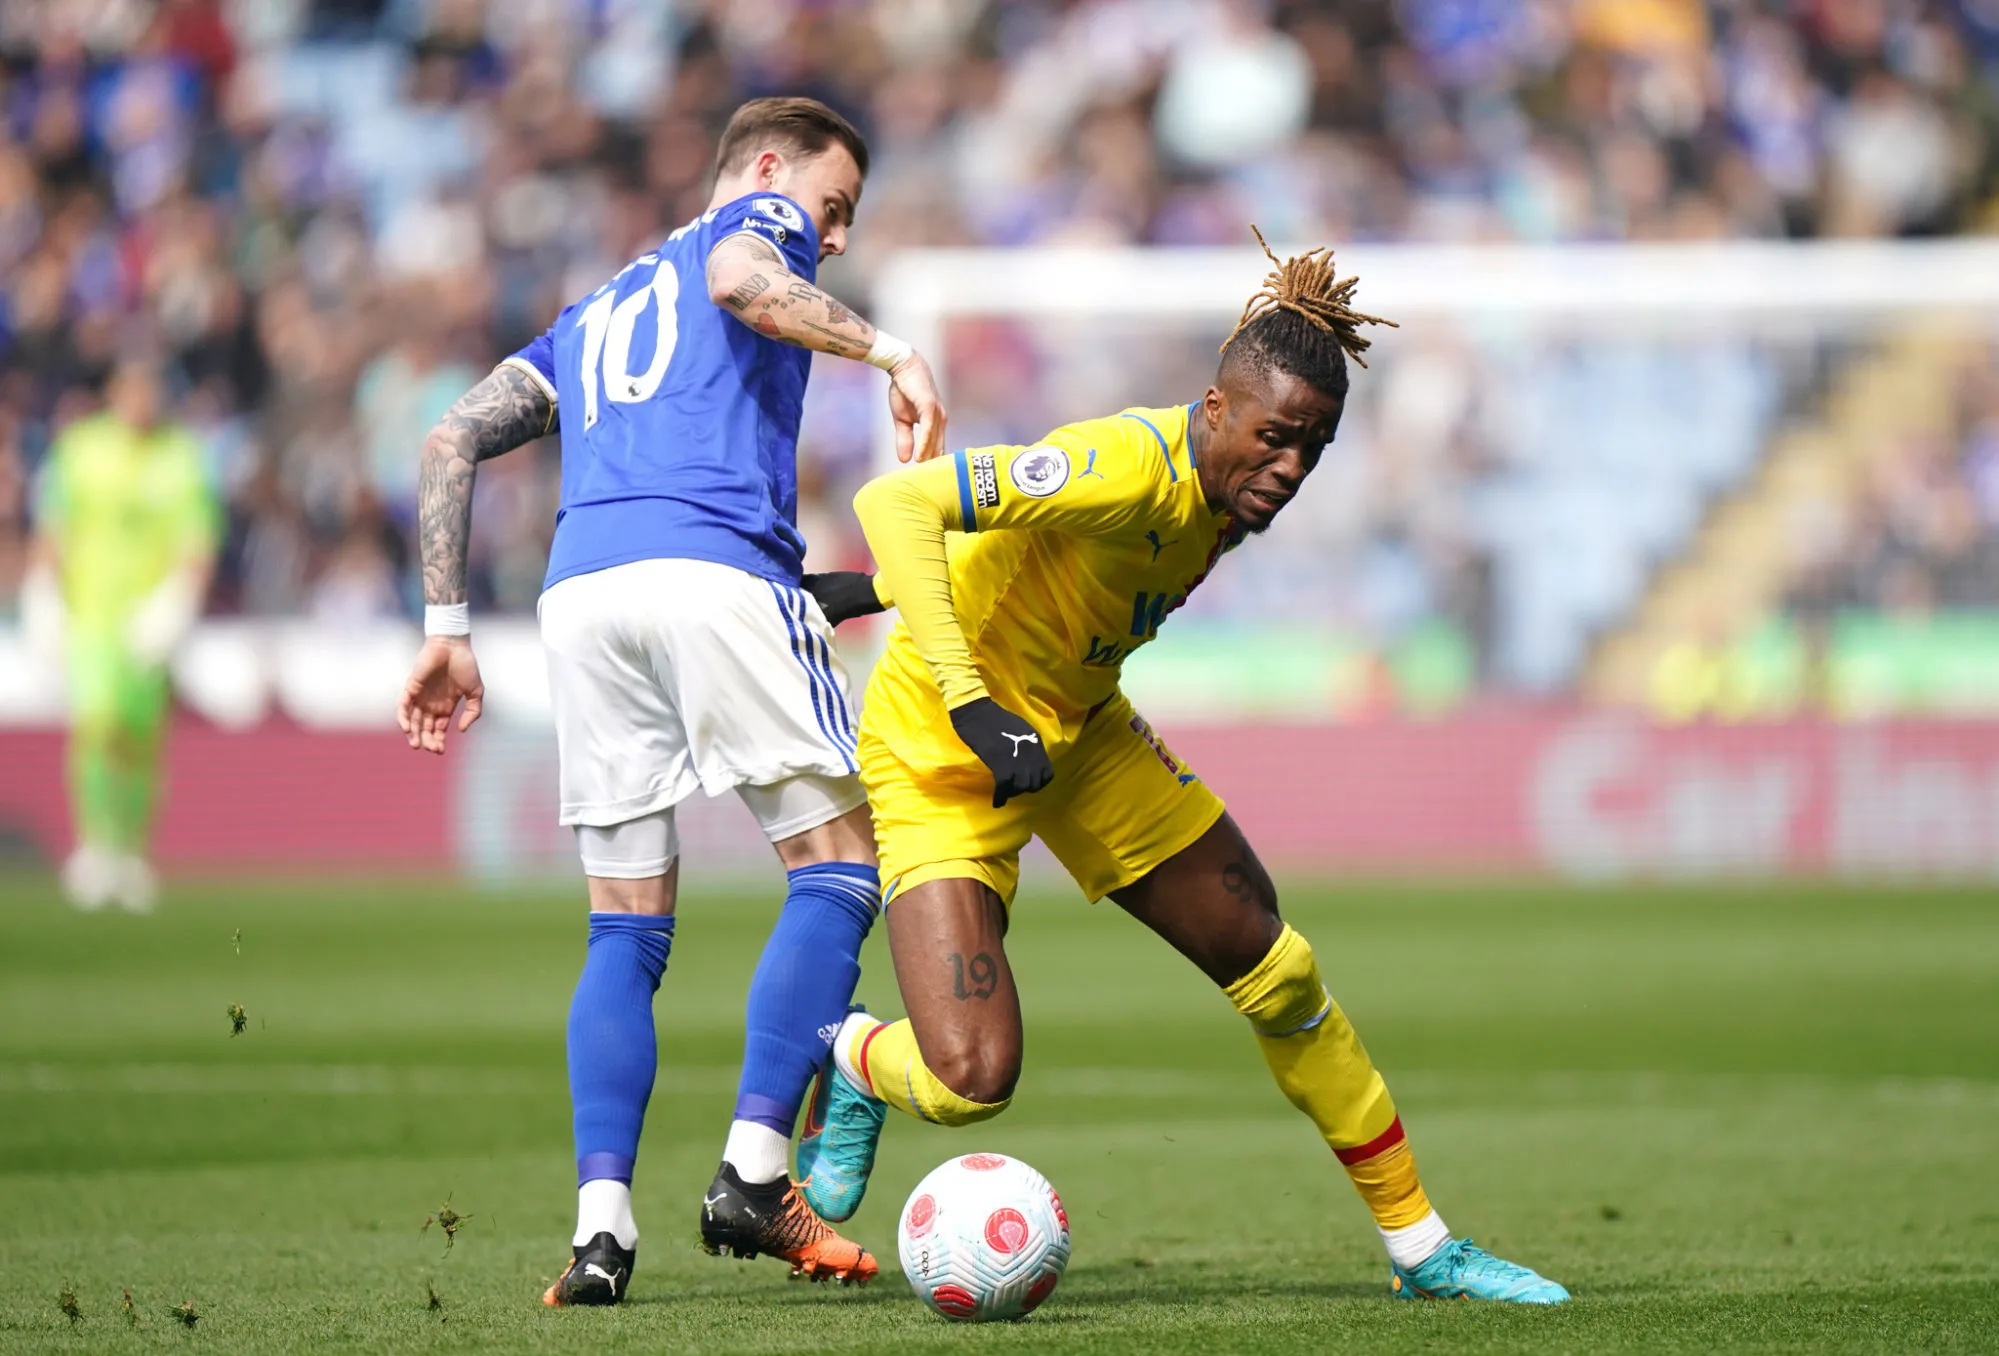 Leicester assure, Norwich se rassure, West Ham piégé